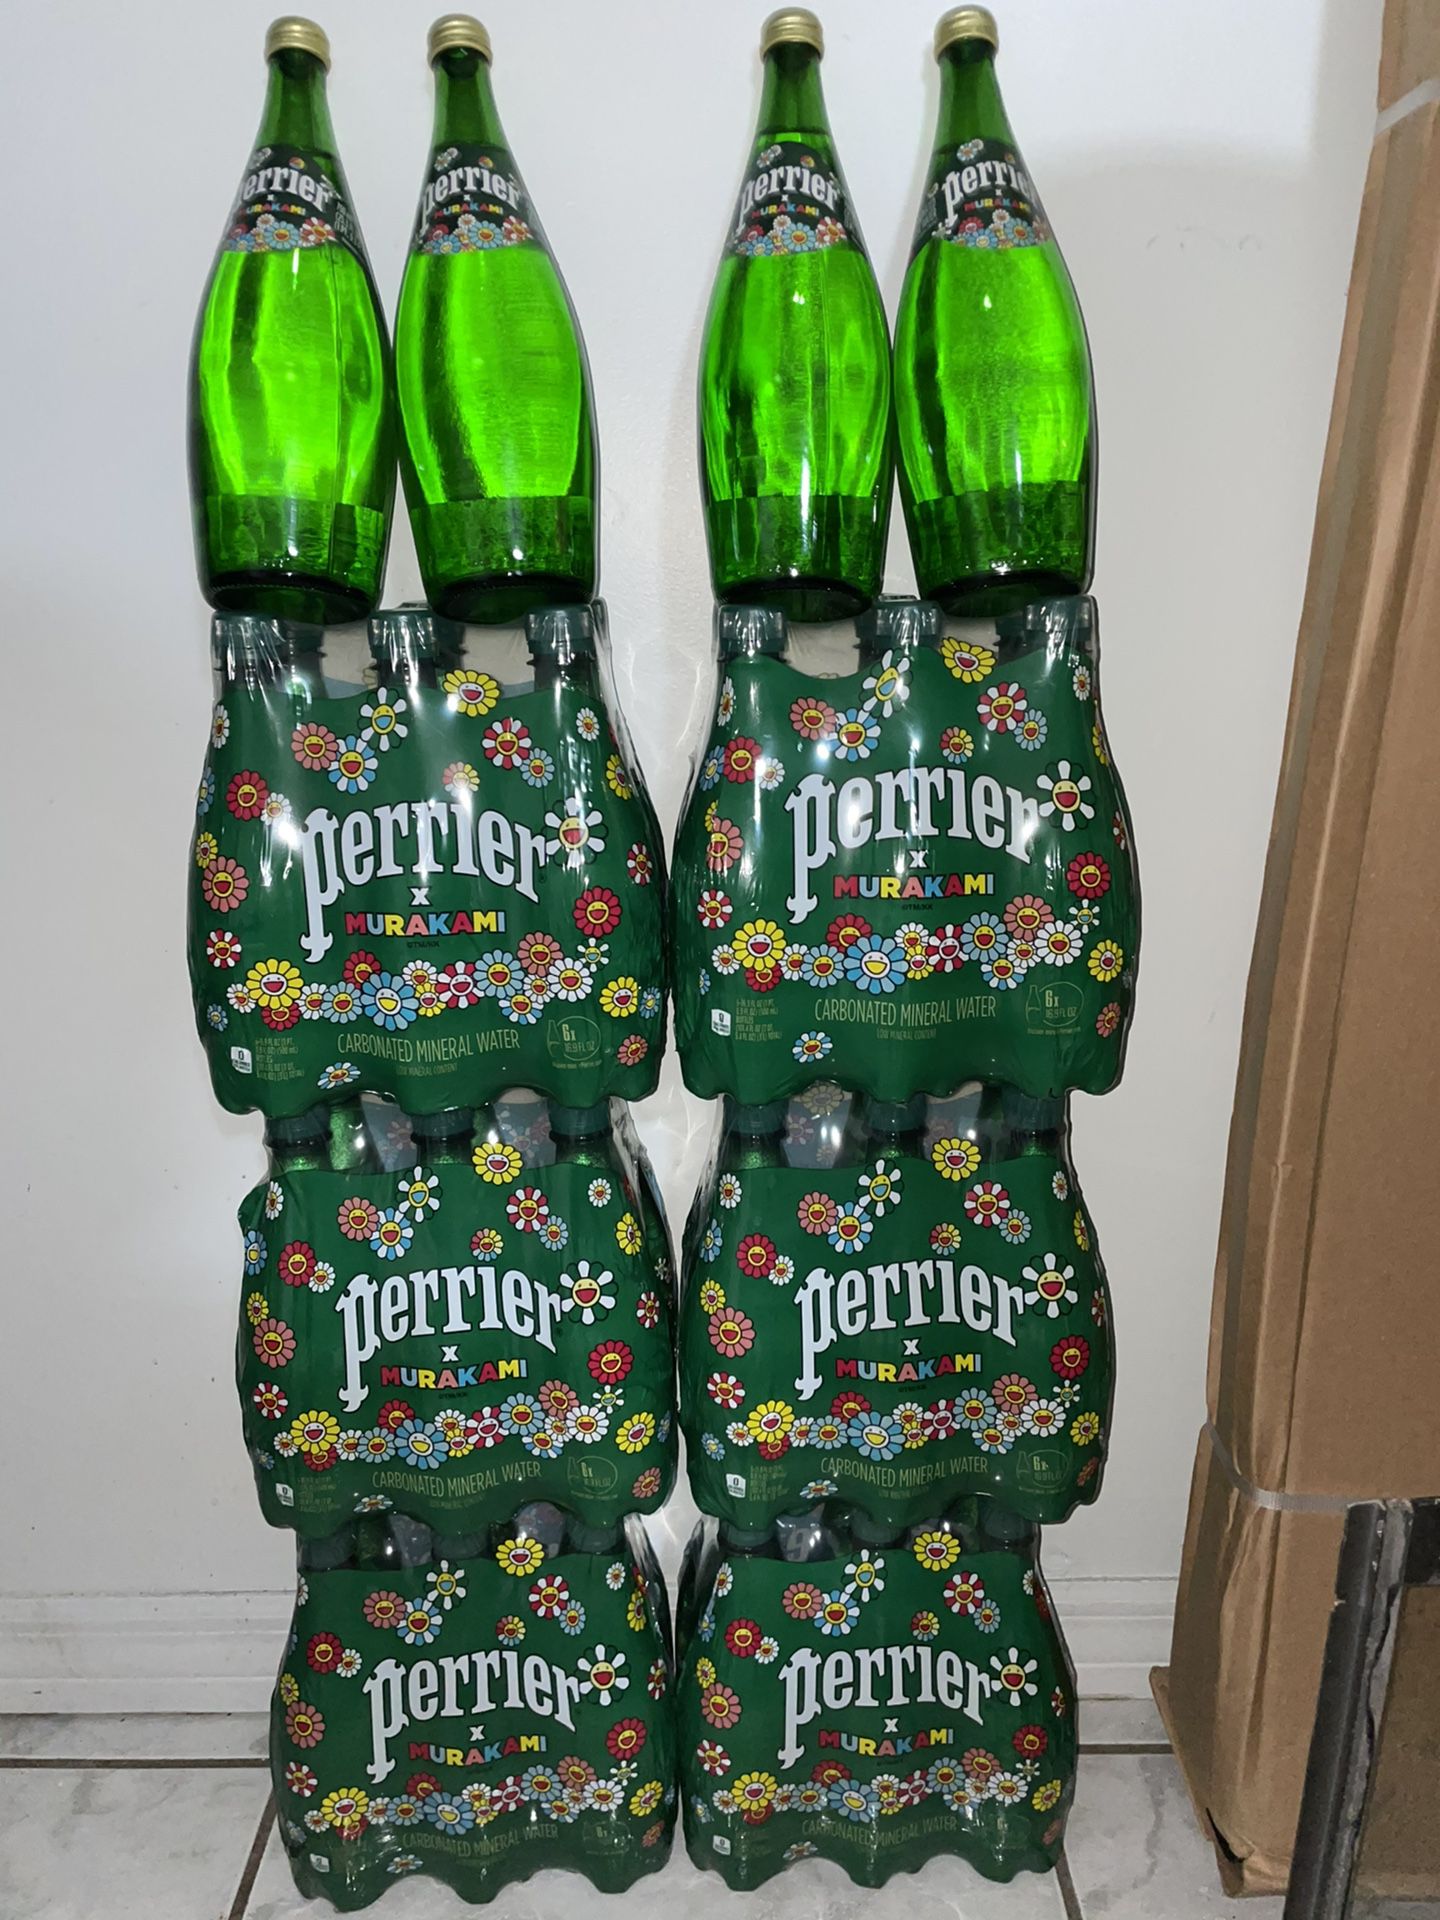 Perrier x Murakami Packs Glass/Plastic Bottles